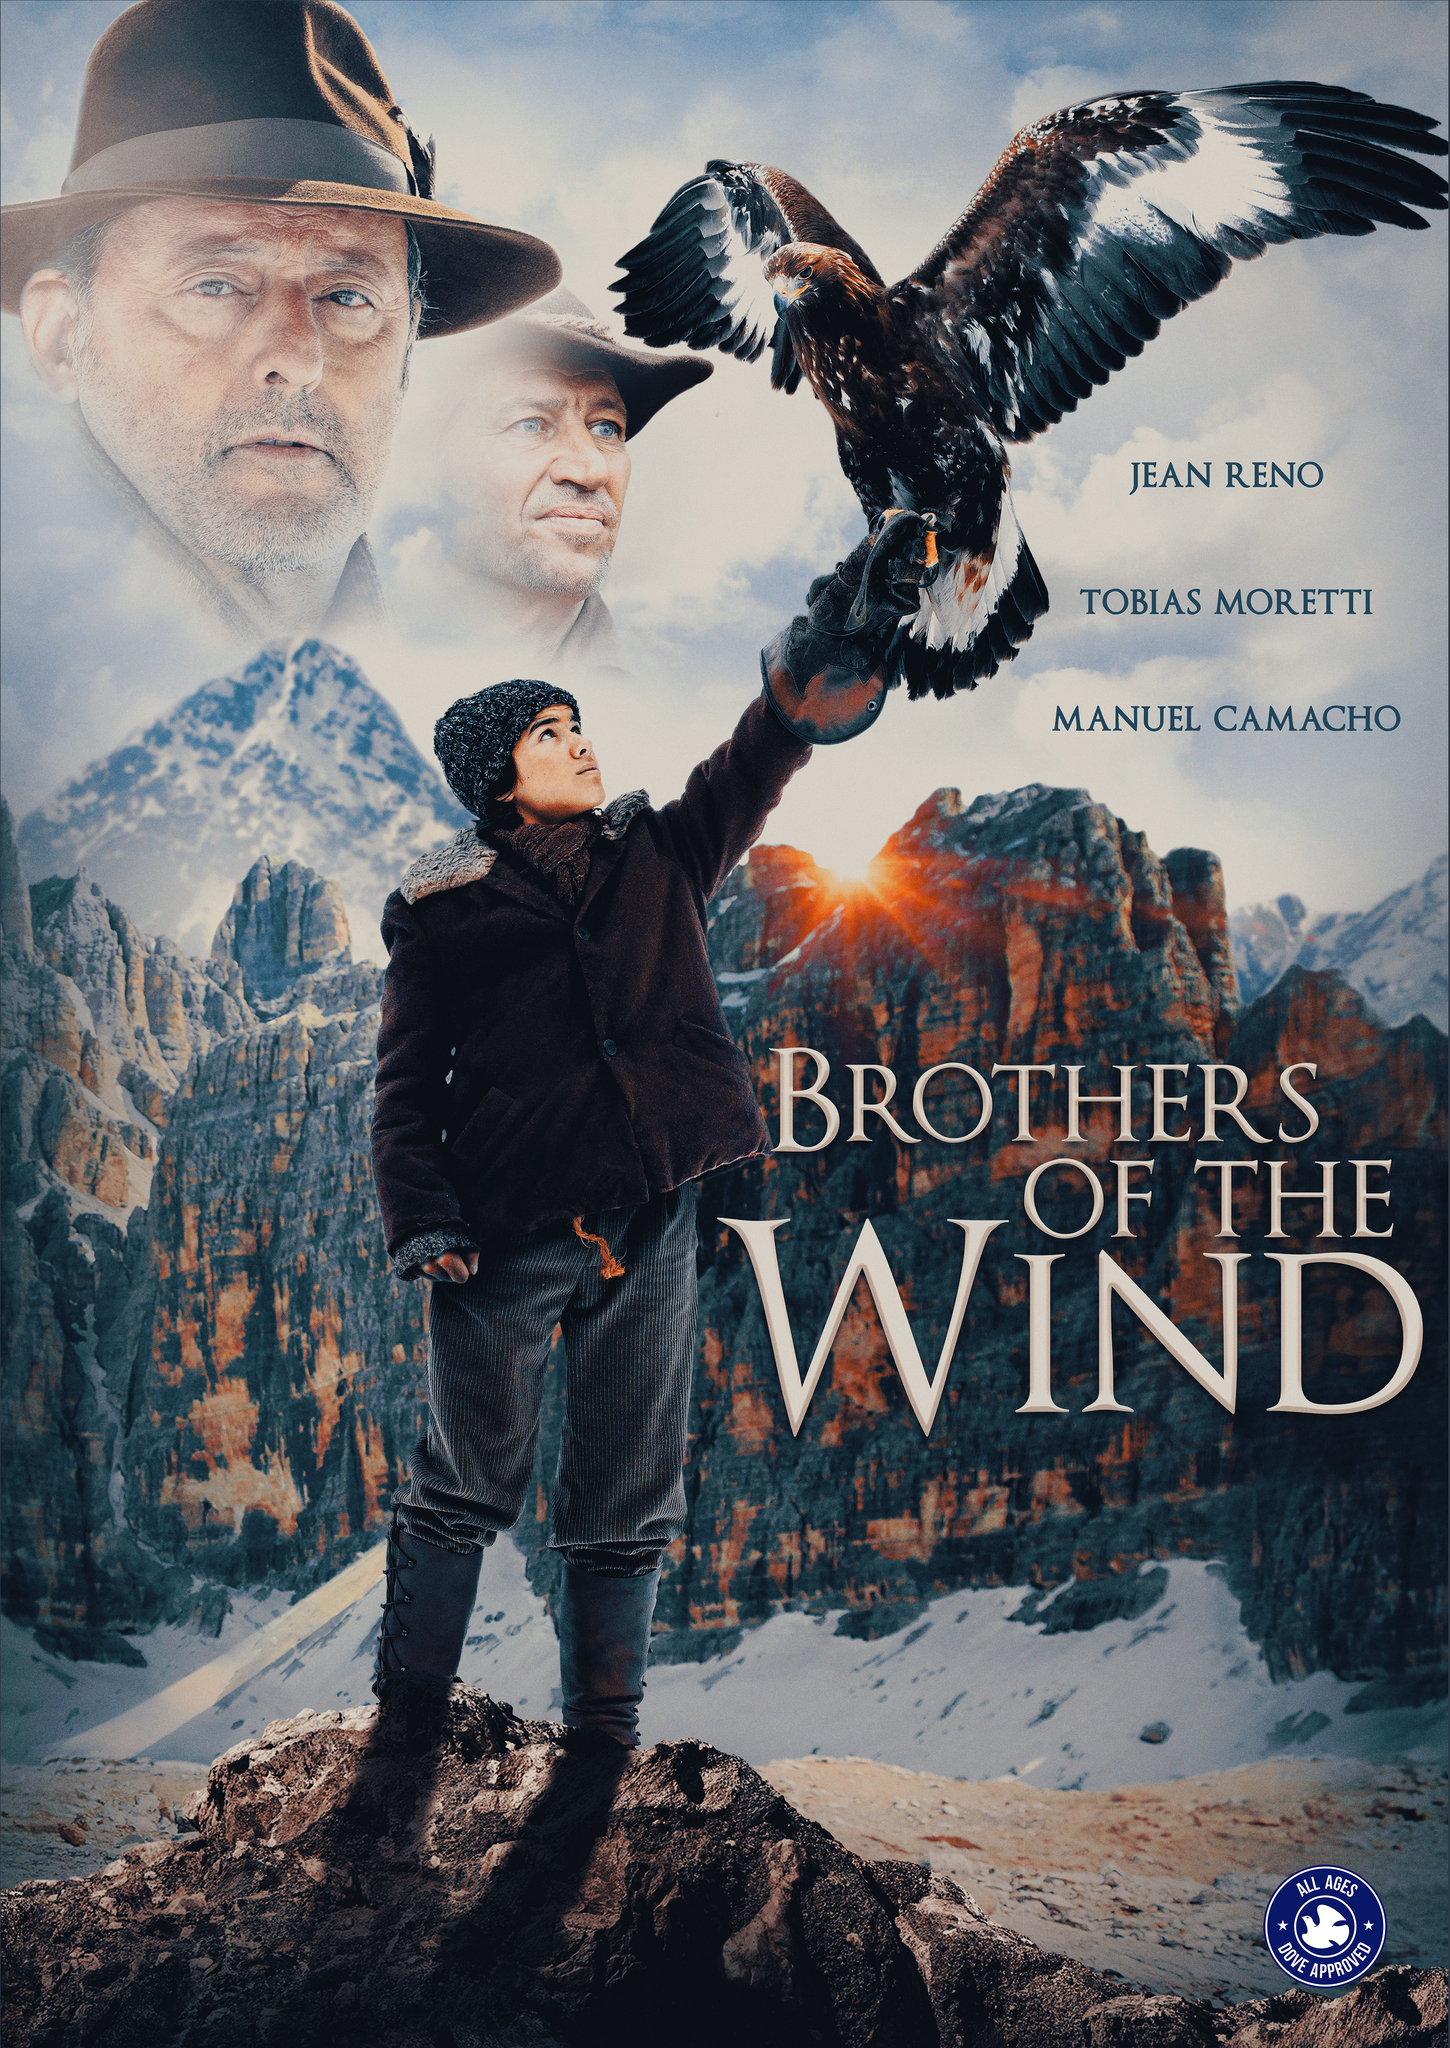 ดูหนังออนไลน์ฟรี BROTHERS OF THE WIND (2015) หนังเต็มเรื่อง หนังมาสเตอร์ ดูหนังHD ดูหนังออนไลน์ ดูหนังใหม่